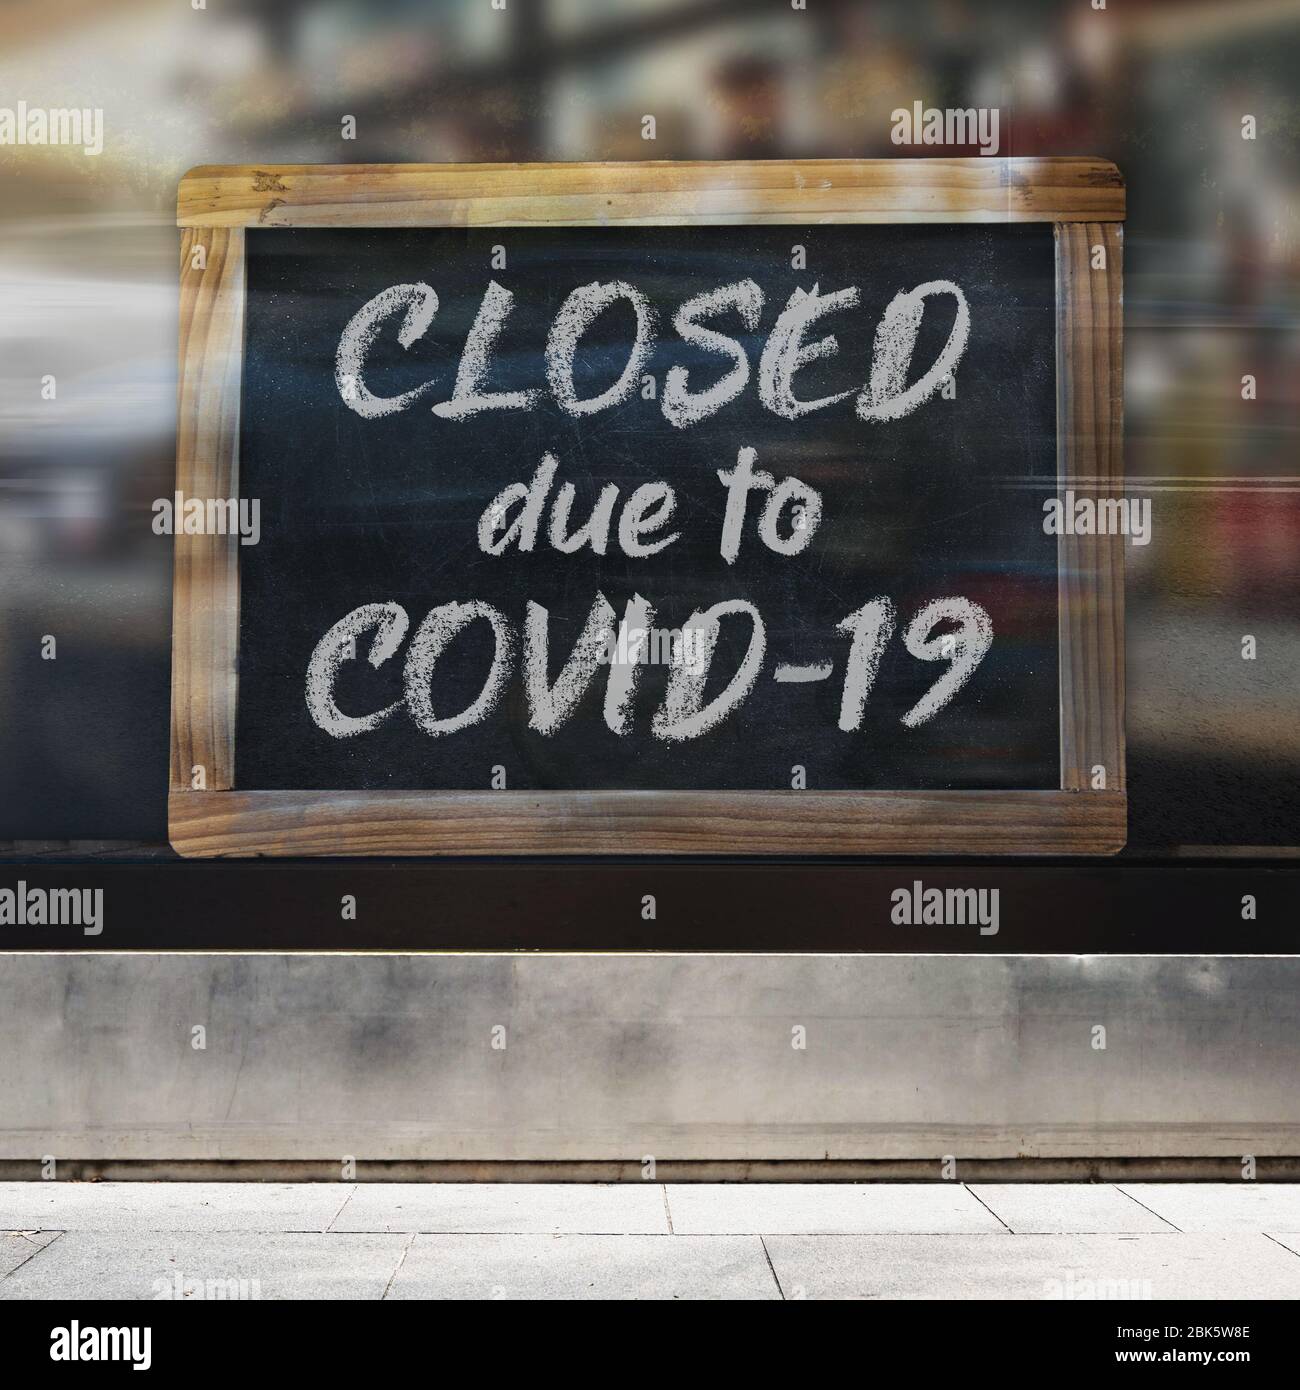 Ein anschauliches Bild von Business-Zeichen-Konzept, das sagt ‘geschlossen aufgrund Covid-19’ auf einem Geschäft / Restaurant-Fenster. Stockfoto